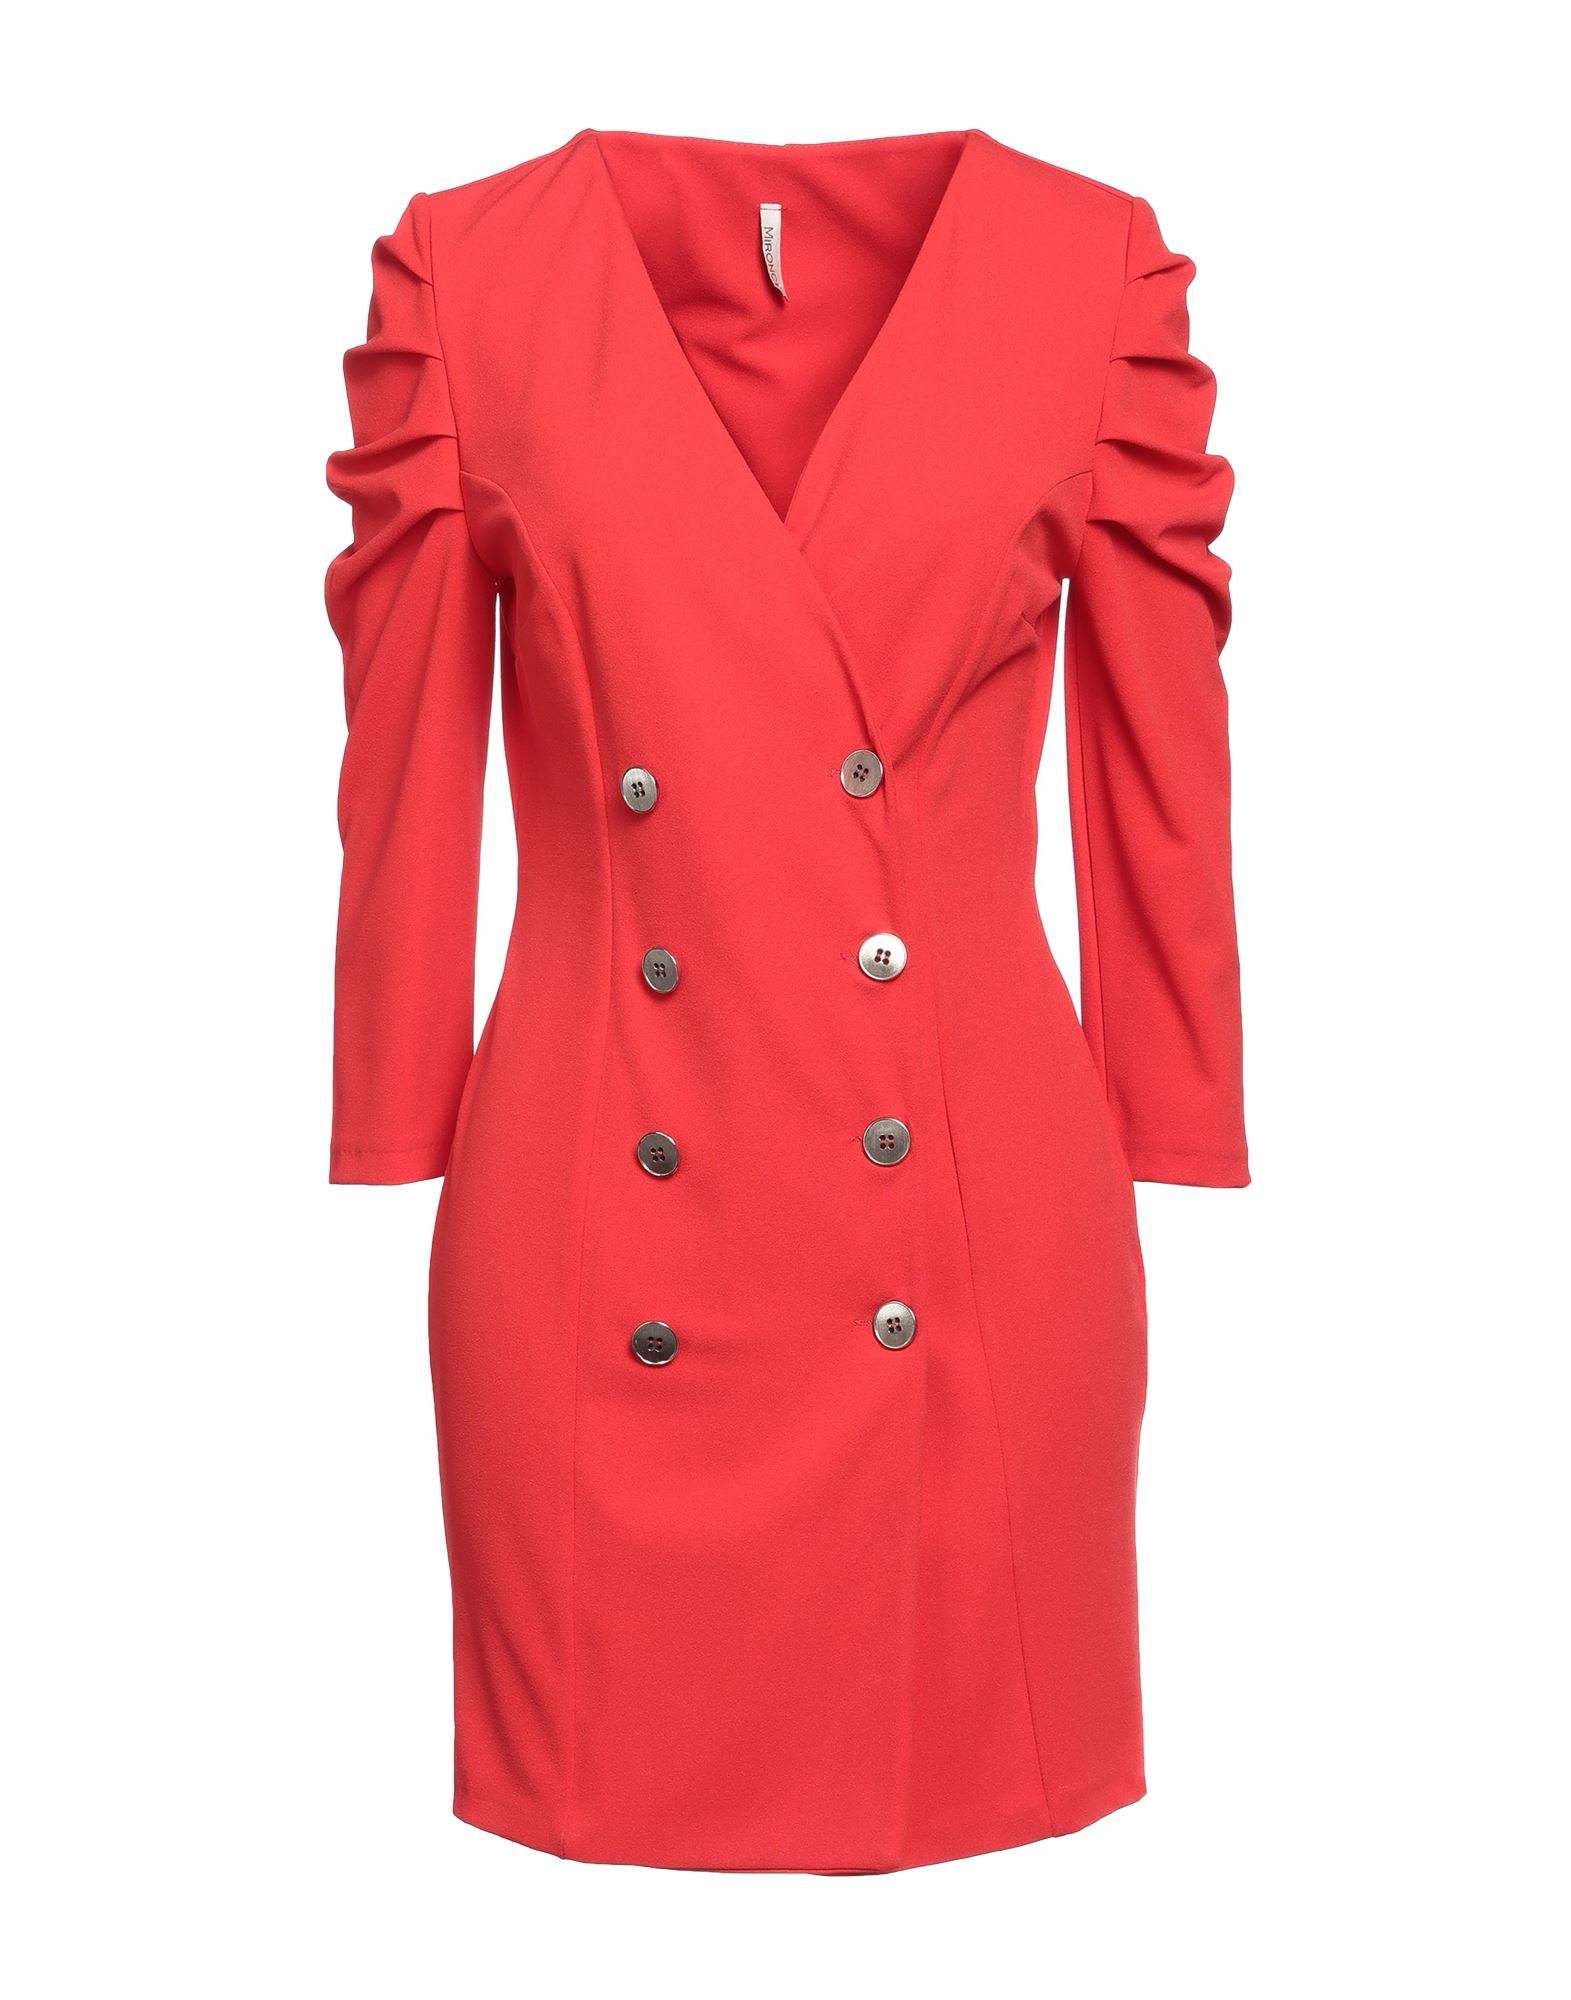 Mironcè Woman Mini Dress Red Size 6 Polyester, Elastane